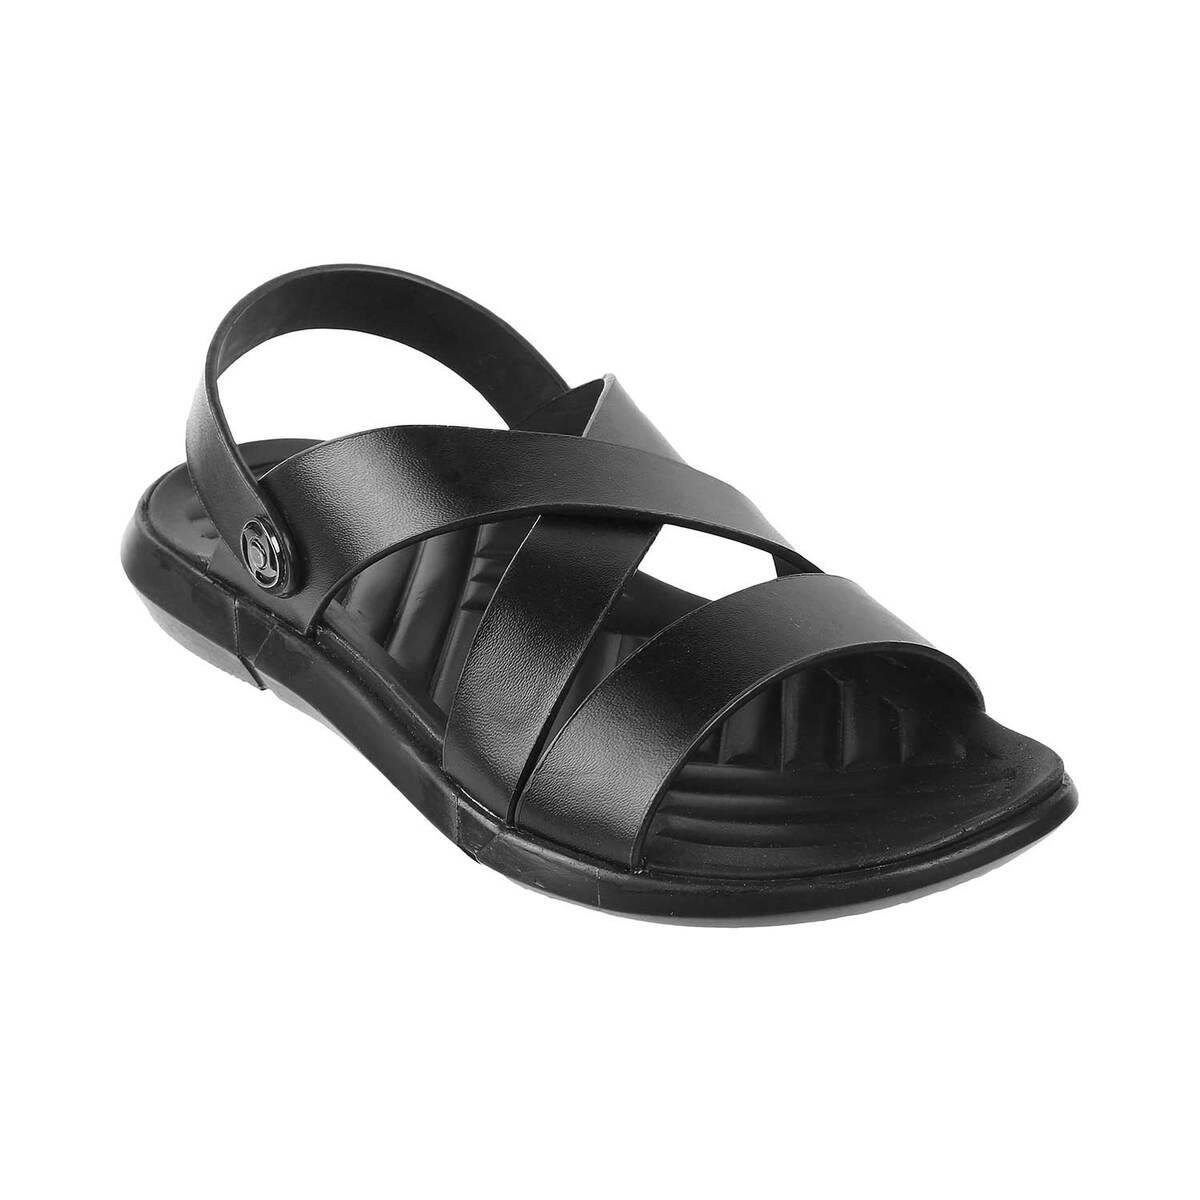 Buy New Balance 750 Boys Sandals- Brown | Foot Locker SG | Foot Locker SG